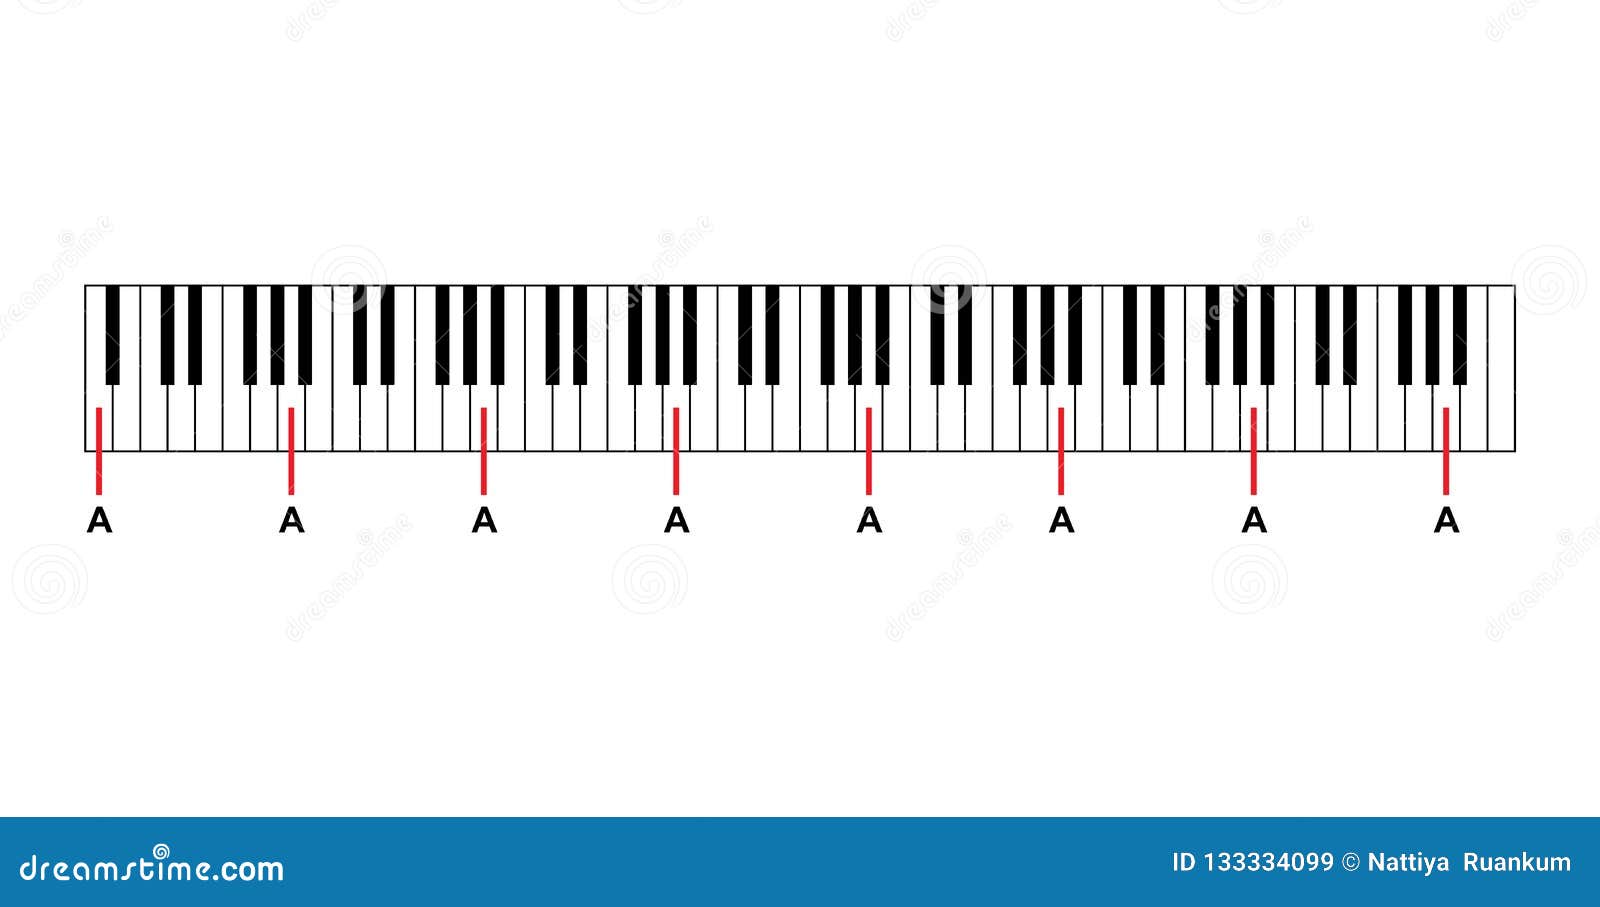 Piano Notes And Keys Chart